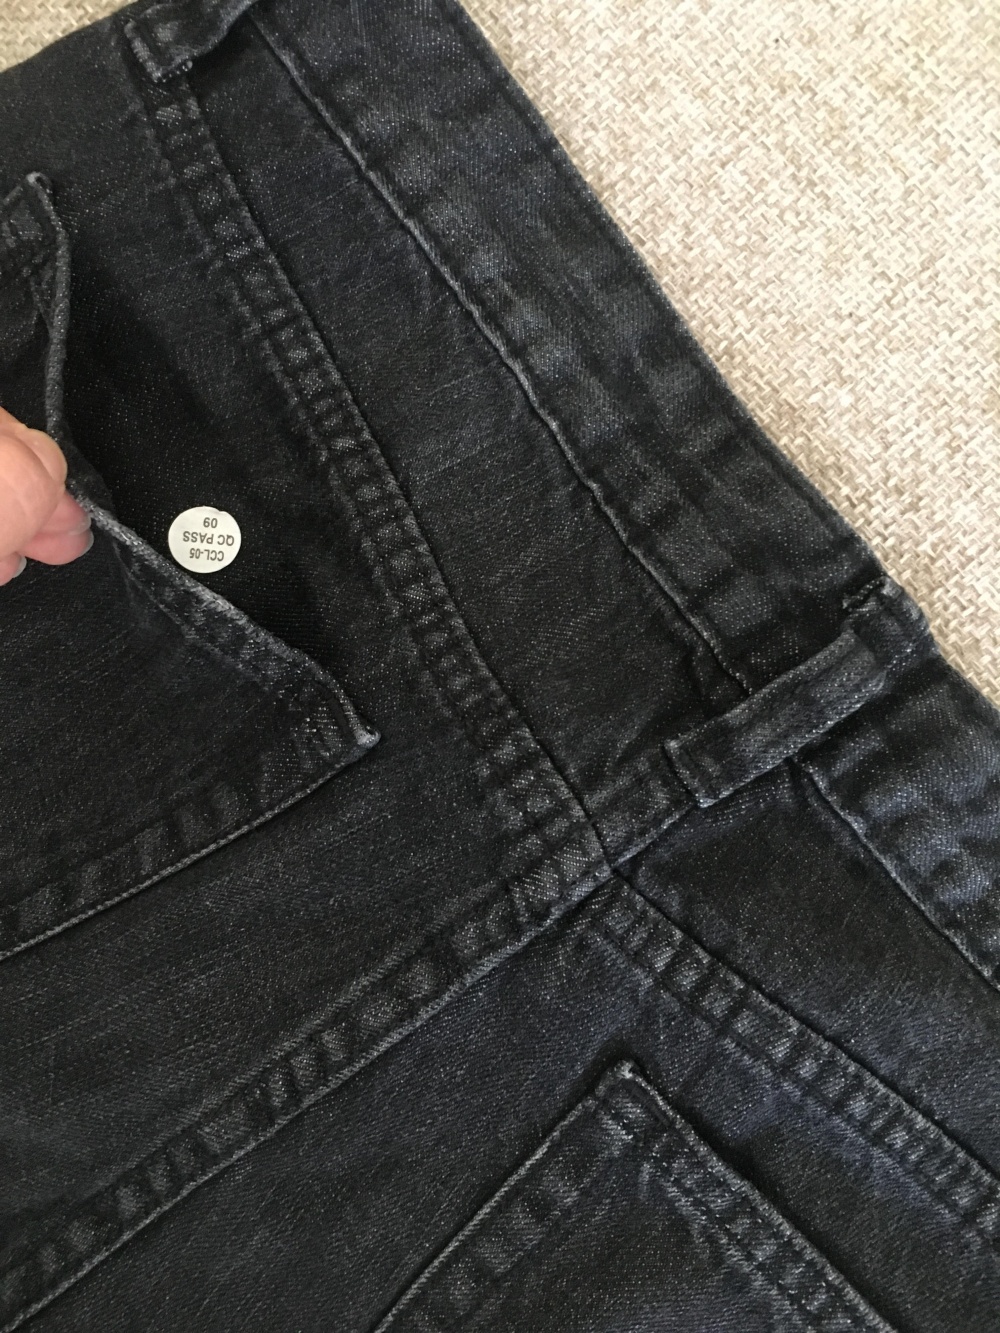 Черные джинсы-бойфренды со средней посадкой GAP, 26